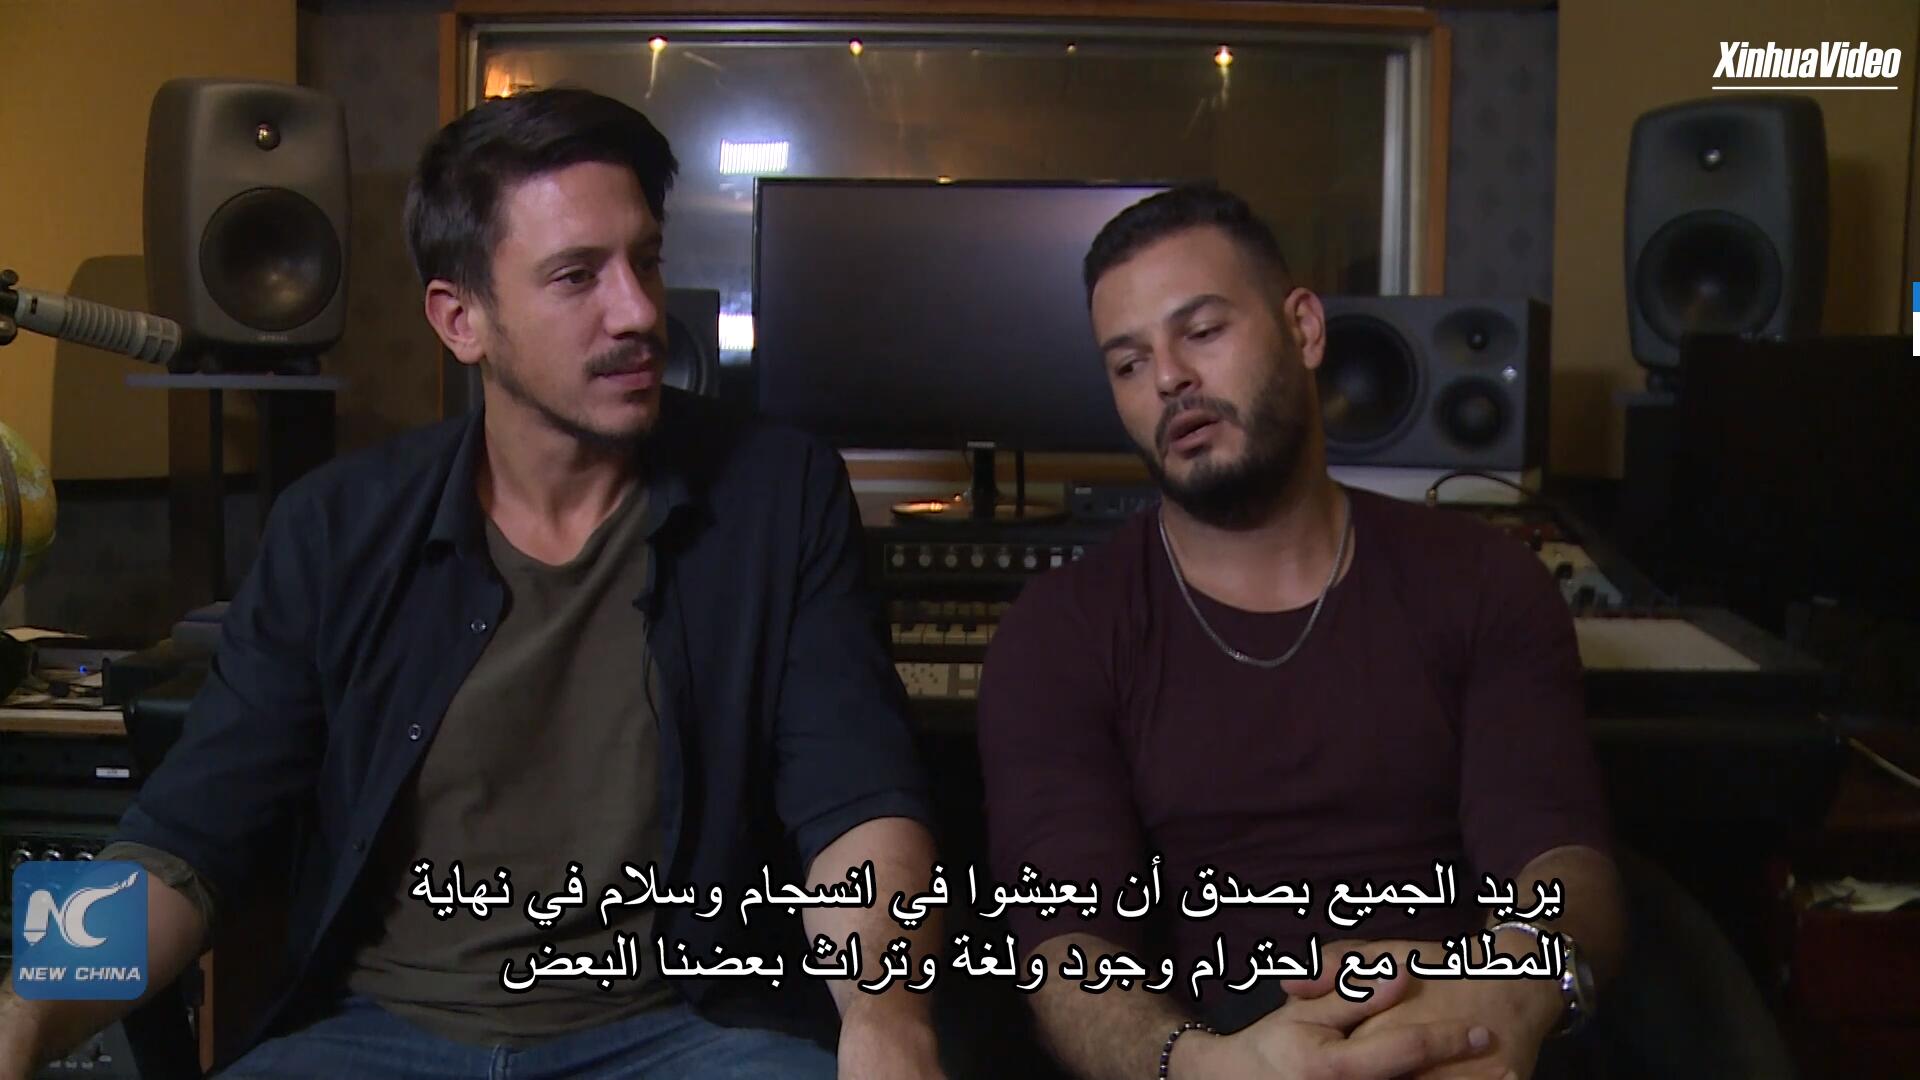 فيديو: ثنائي راب يهودي-عربي يهدف إلى كسر الحواجز وتدعيم الحديث الصريح